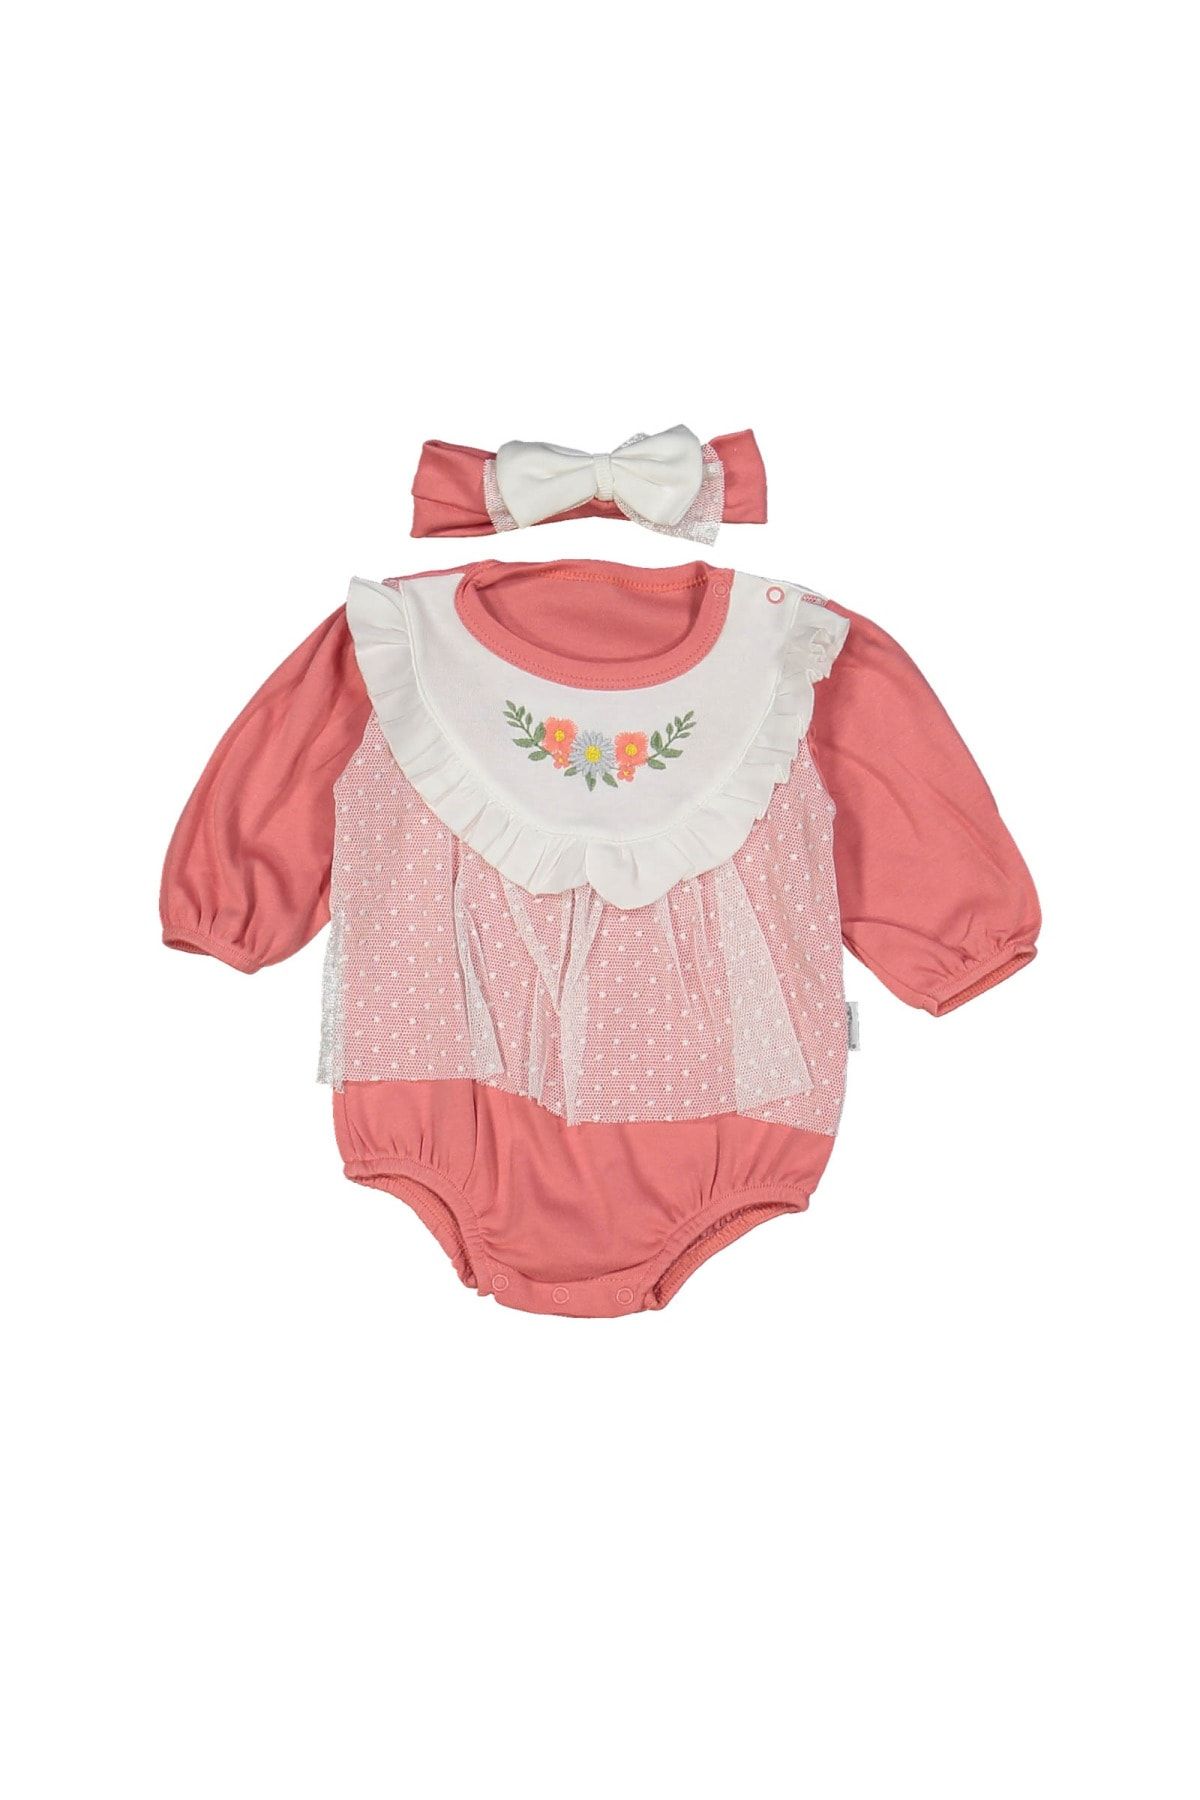 Bebek Özel Kız Bebek Puantiyeli Tüllü Yakası Çiçek Nakışlı Romper Badi Elbise (3-9 Aylık)